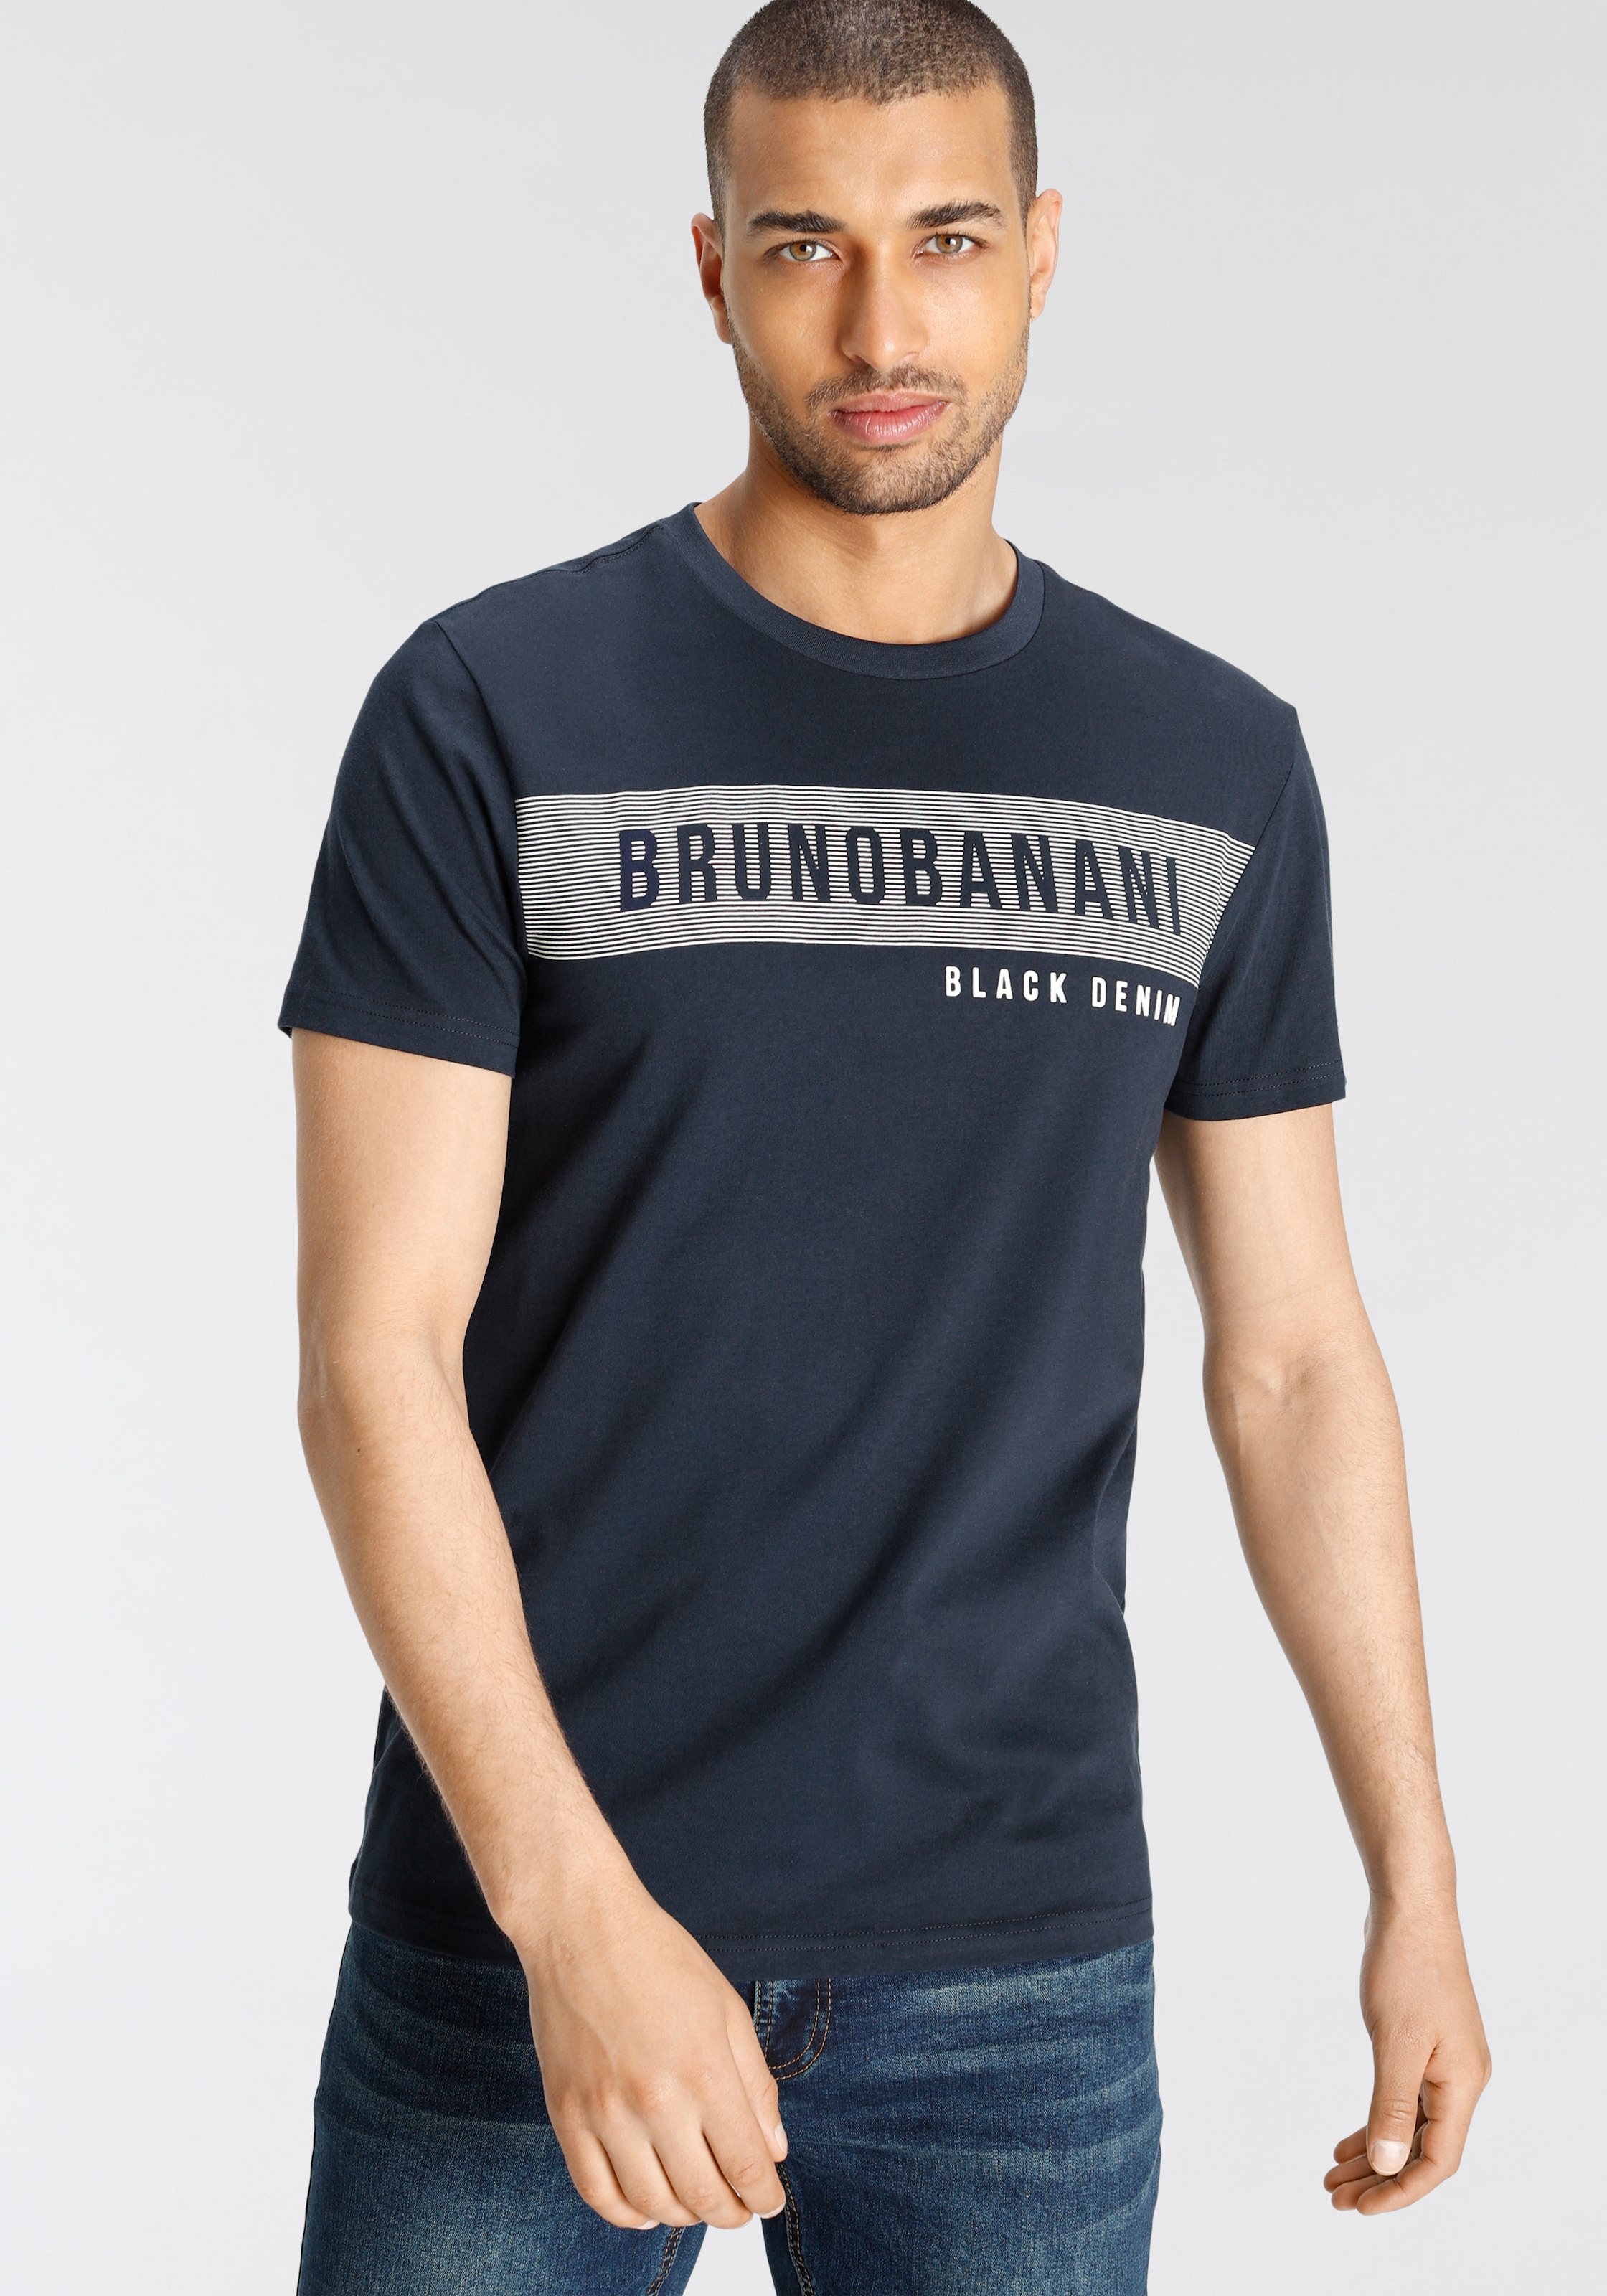 Bruno Banani Herren bequem Shirts ♕ online kaufen